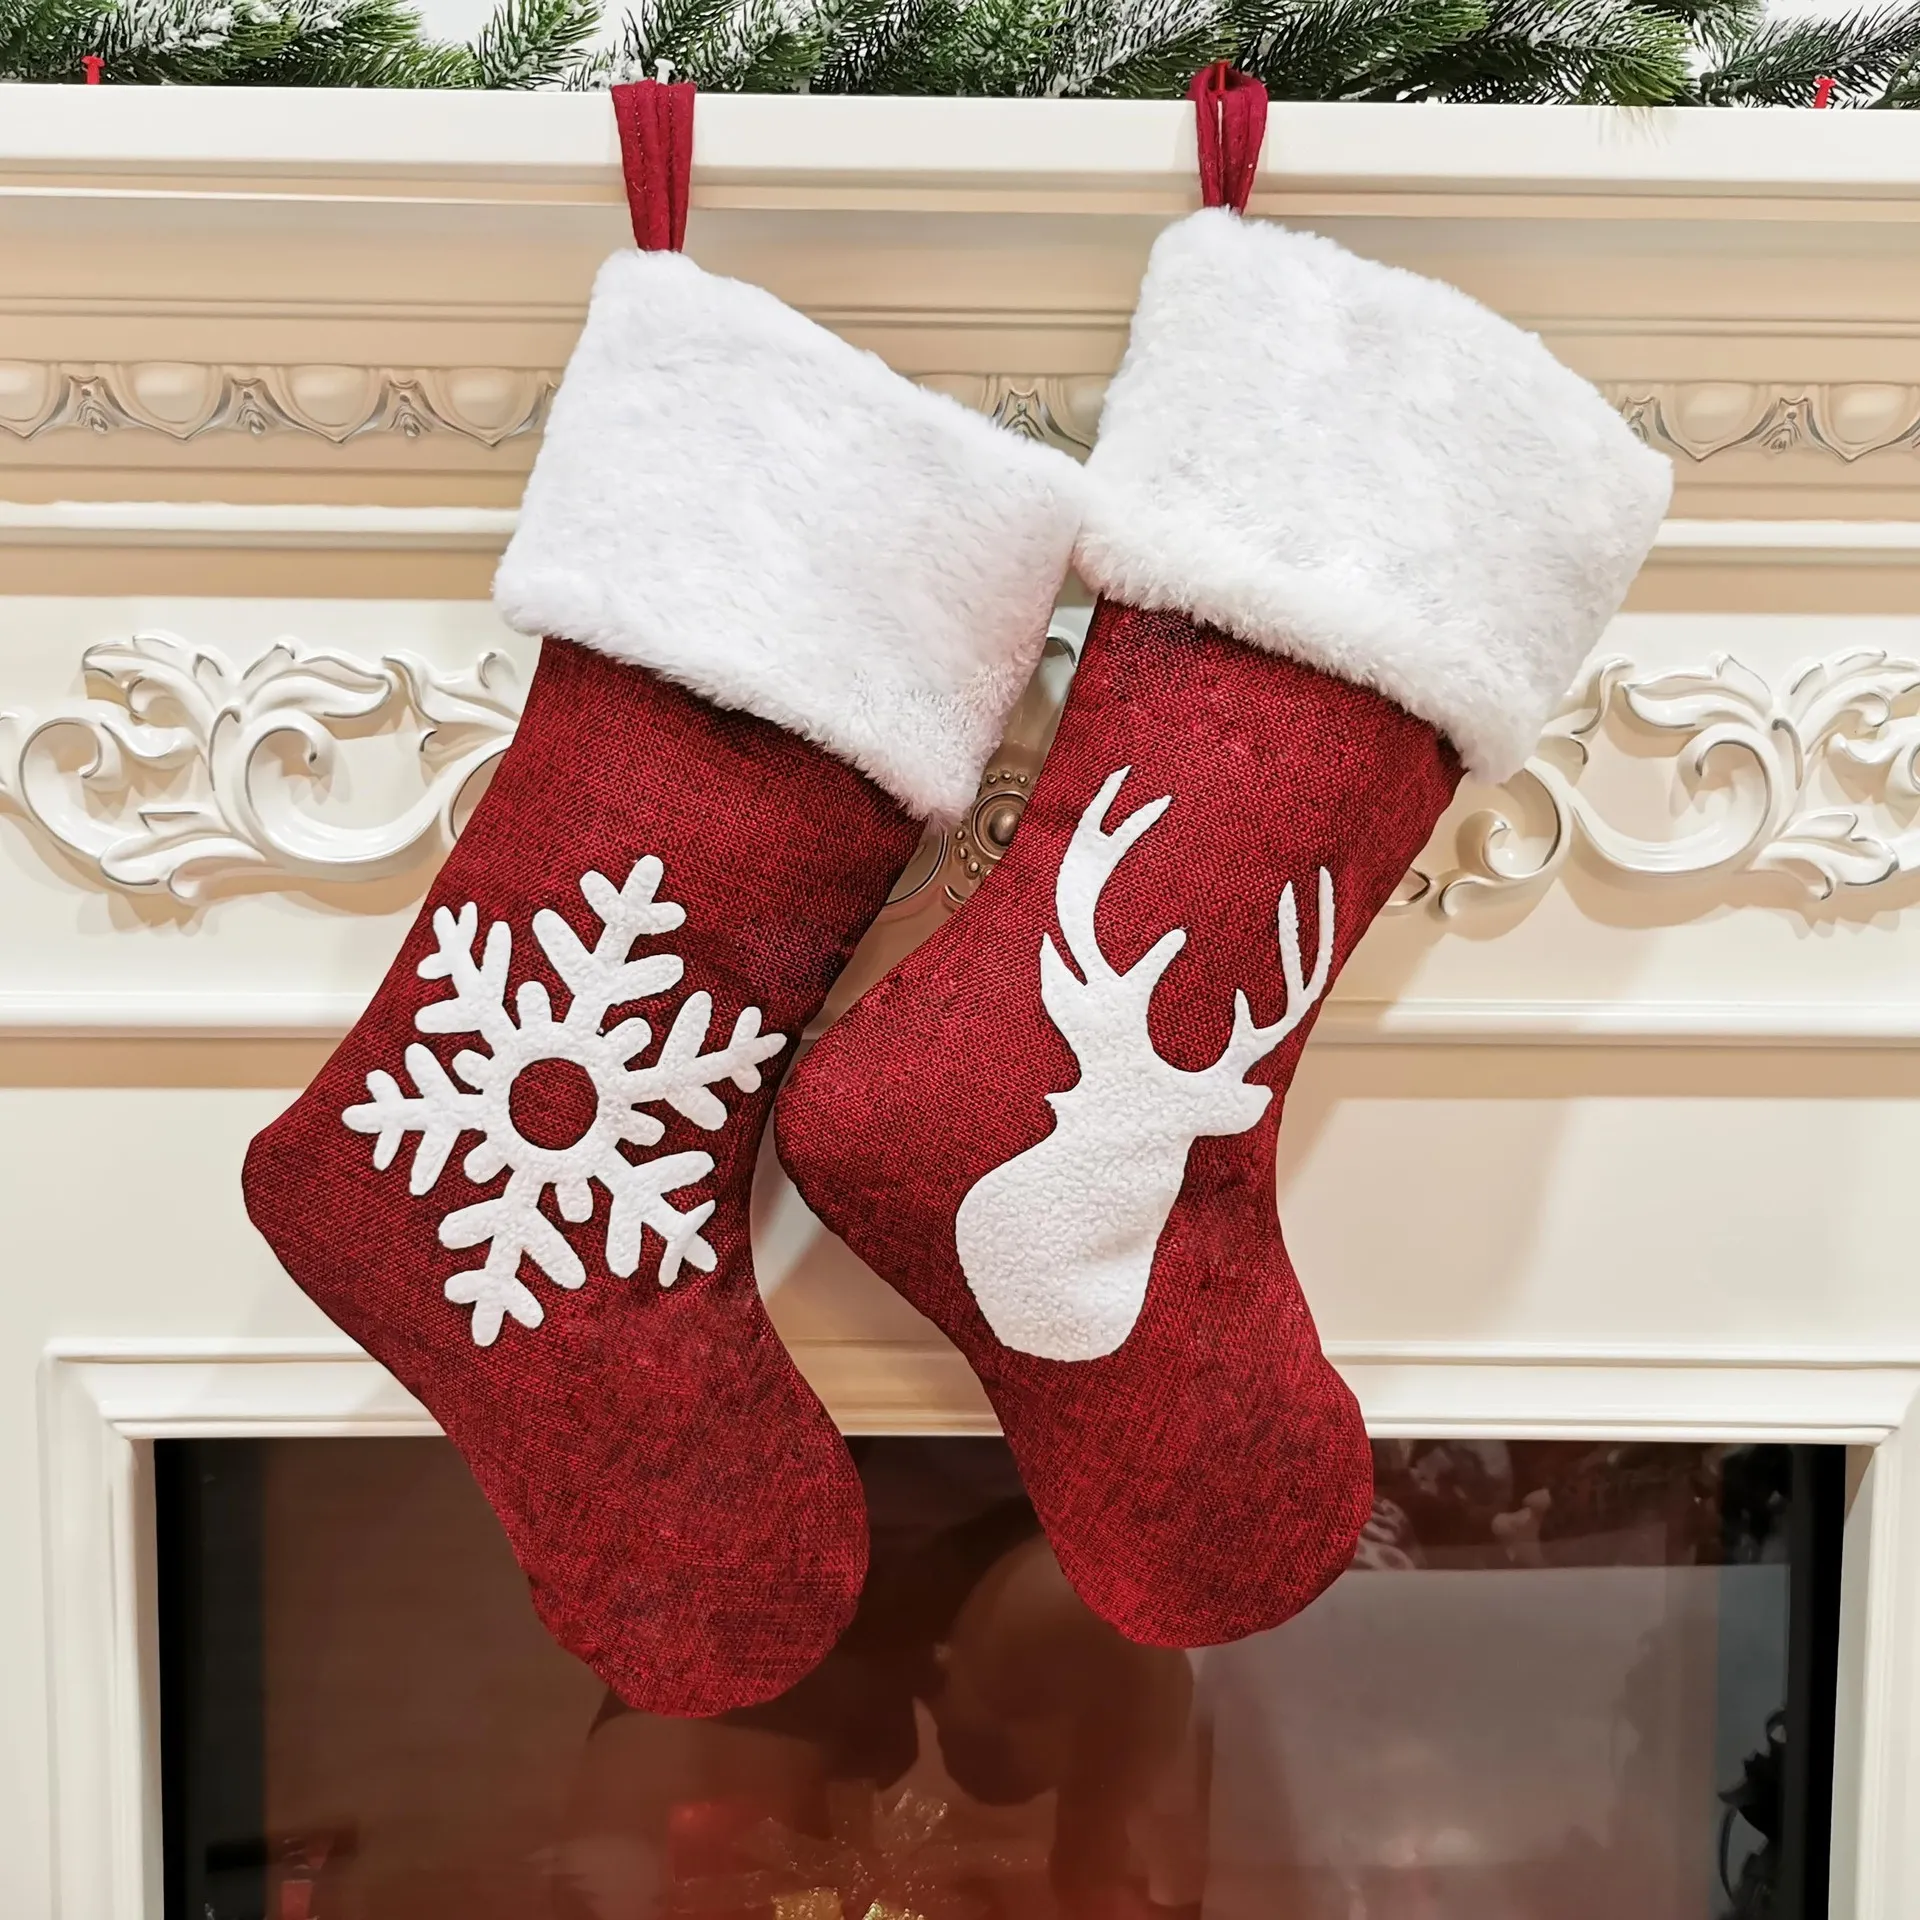 4 tarzı Noel çorap Noel Ağaçları Süsleme Parti Süsleri Santa Noel Çorap Şeker Çorap Çanta Noel Çanta HWE918